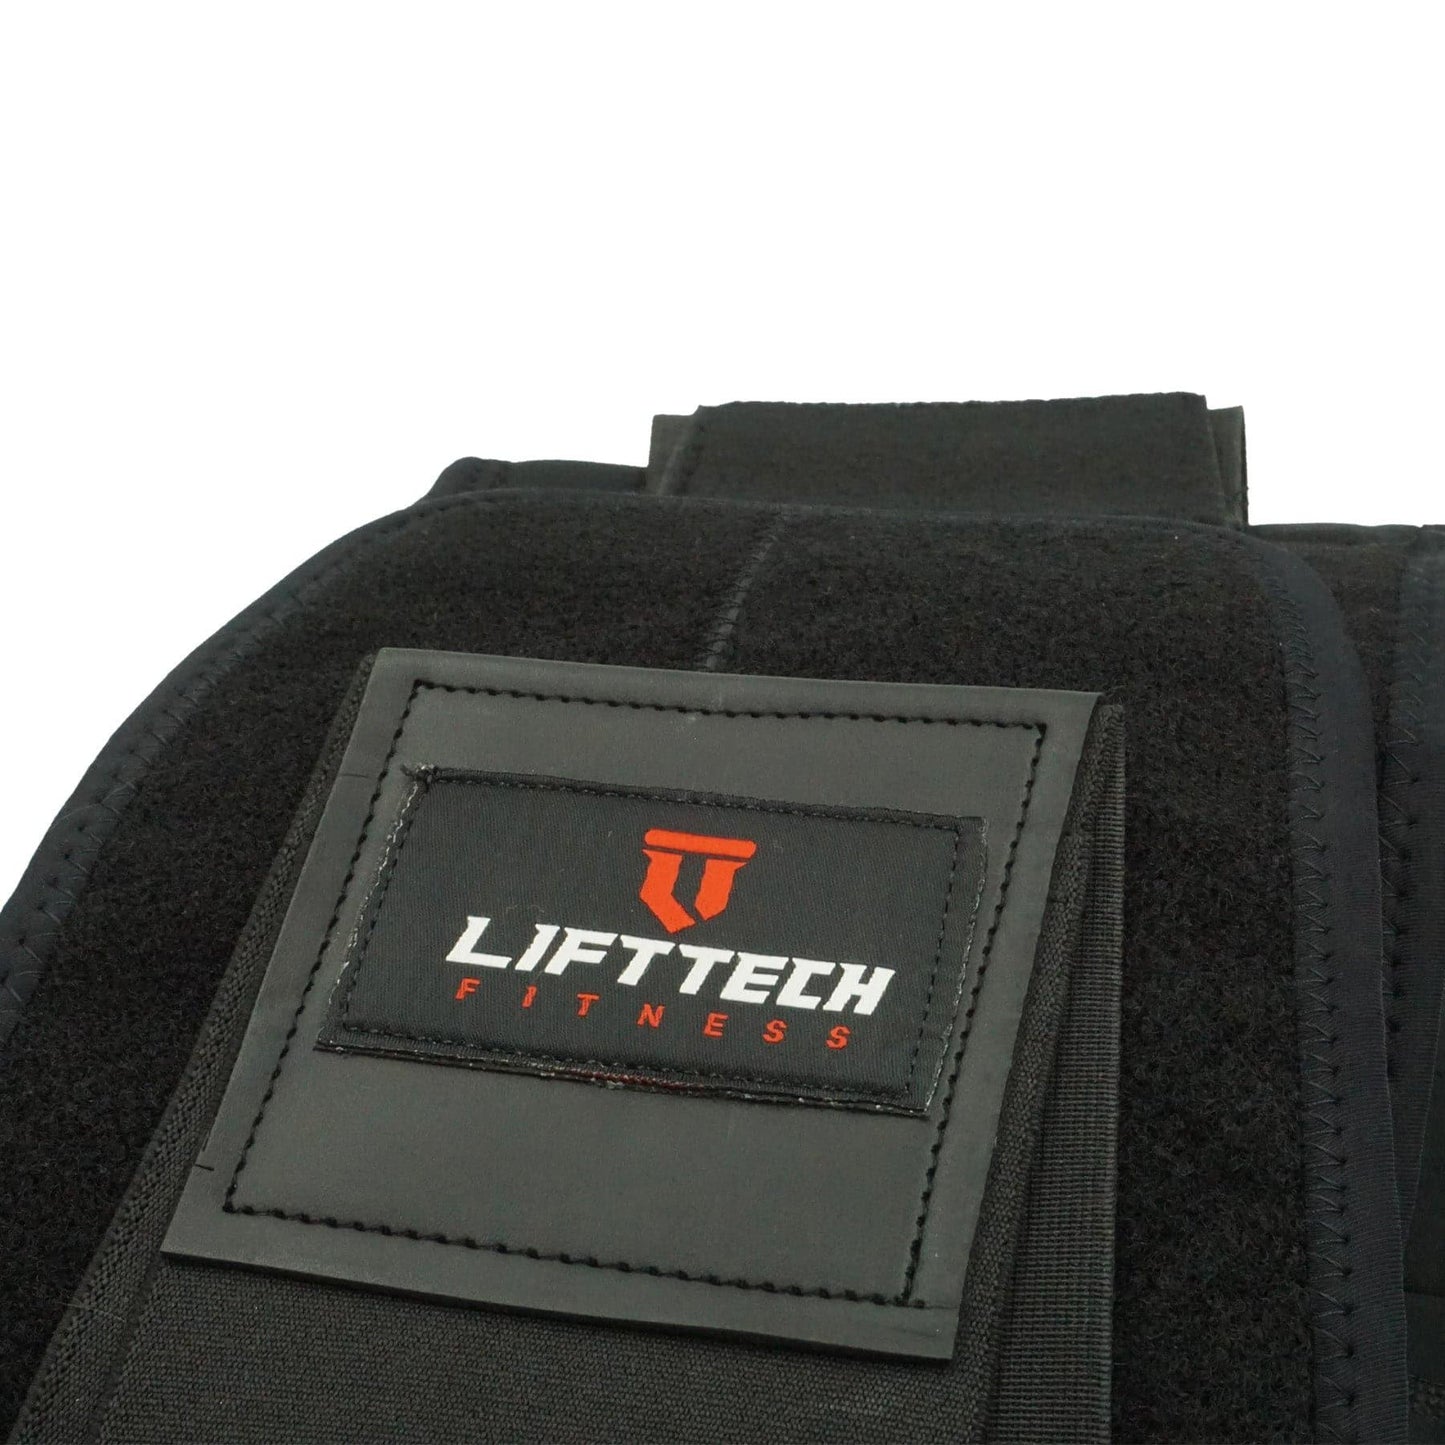 Lift Tech Fitness Comp Waist Trainer Training Aids Lift Tech Fitness 